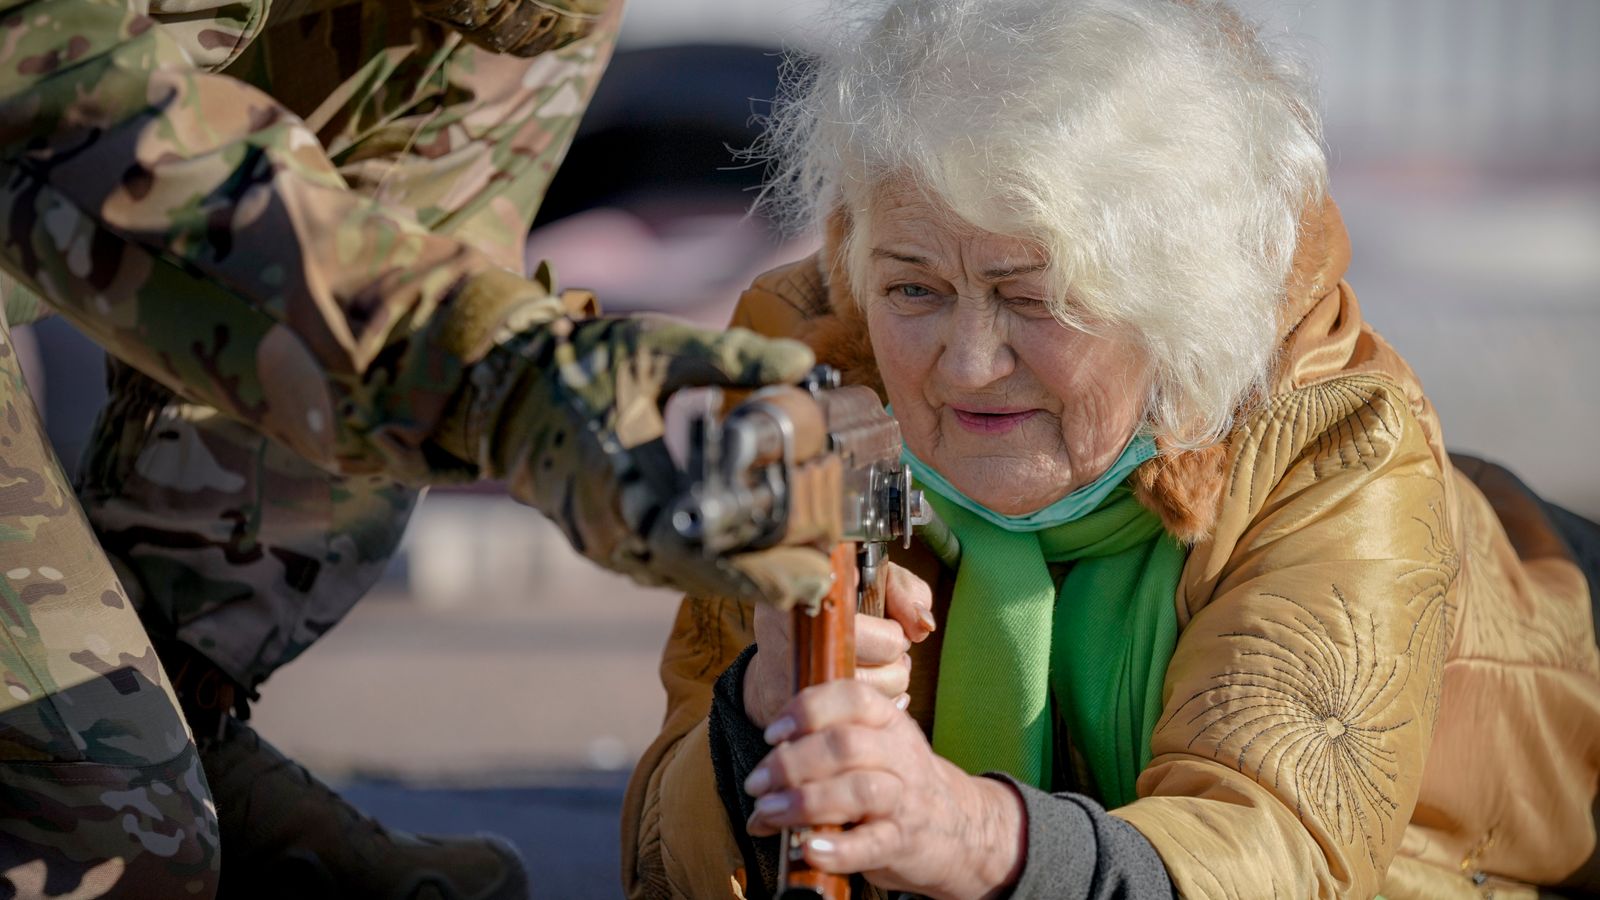 Înainte de izbucnirea războiului, femei de toate vârstele au învățat tehnici de autoapărare și de supraviețuire